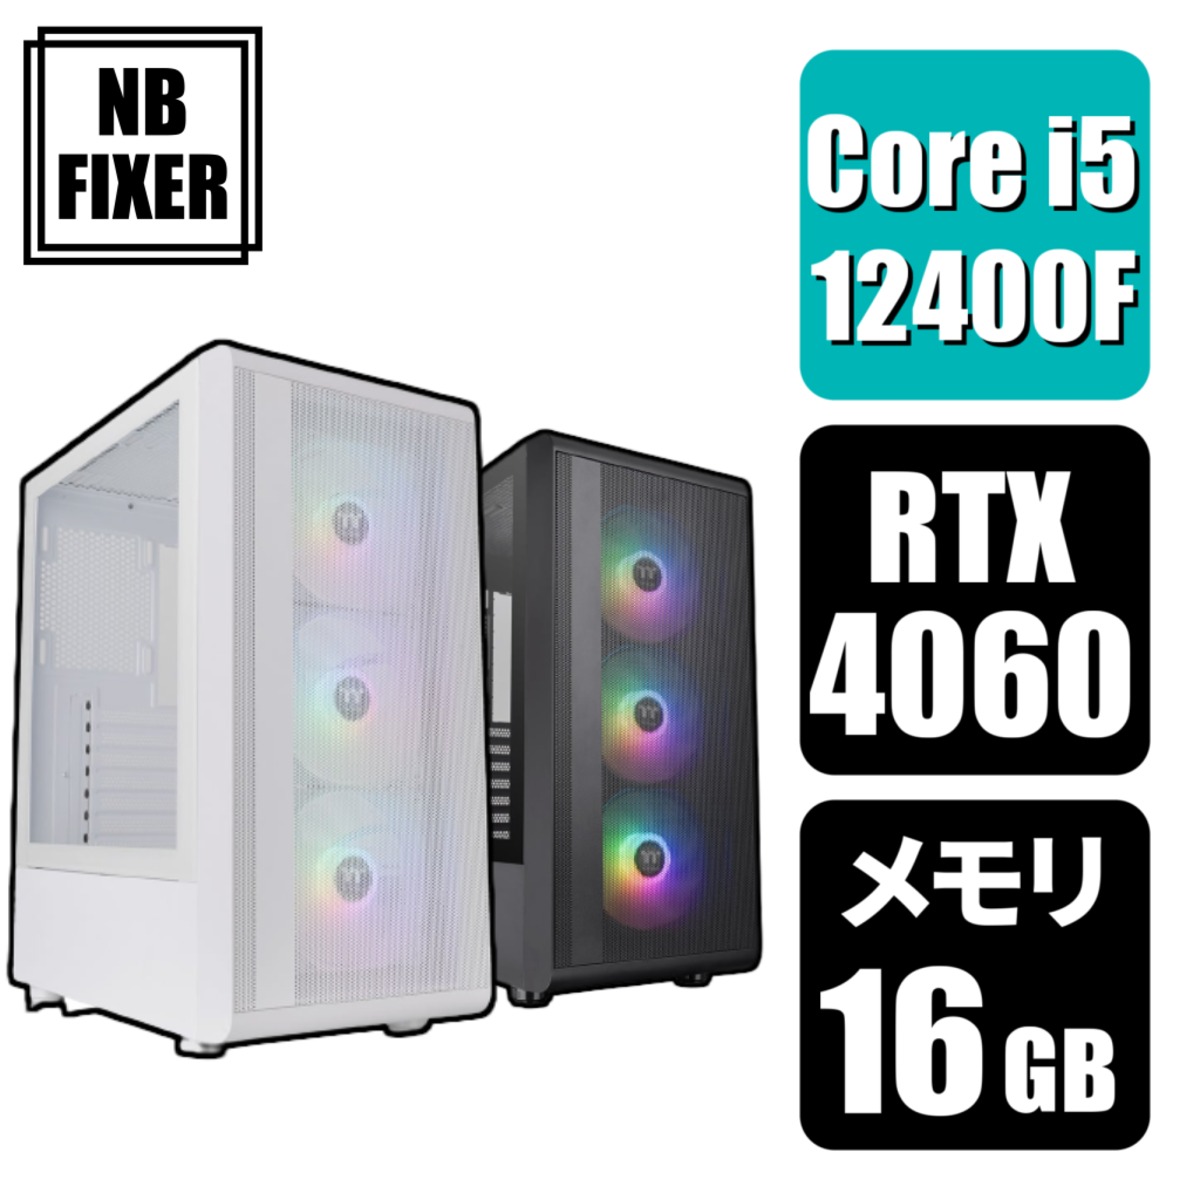 【ゲーミングPC】 Core i5 12400F / RTX4060 / メモリ16GB / SSD 1TB | NB FIXER  公式オンラインショップ powered by BASE